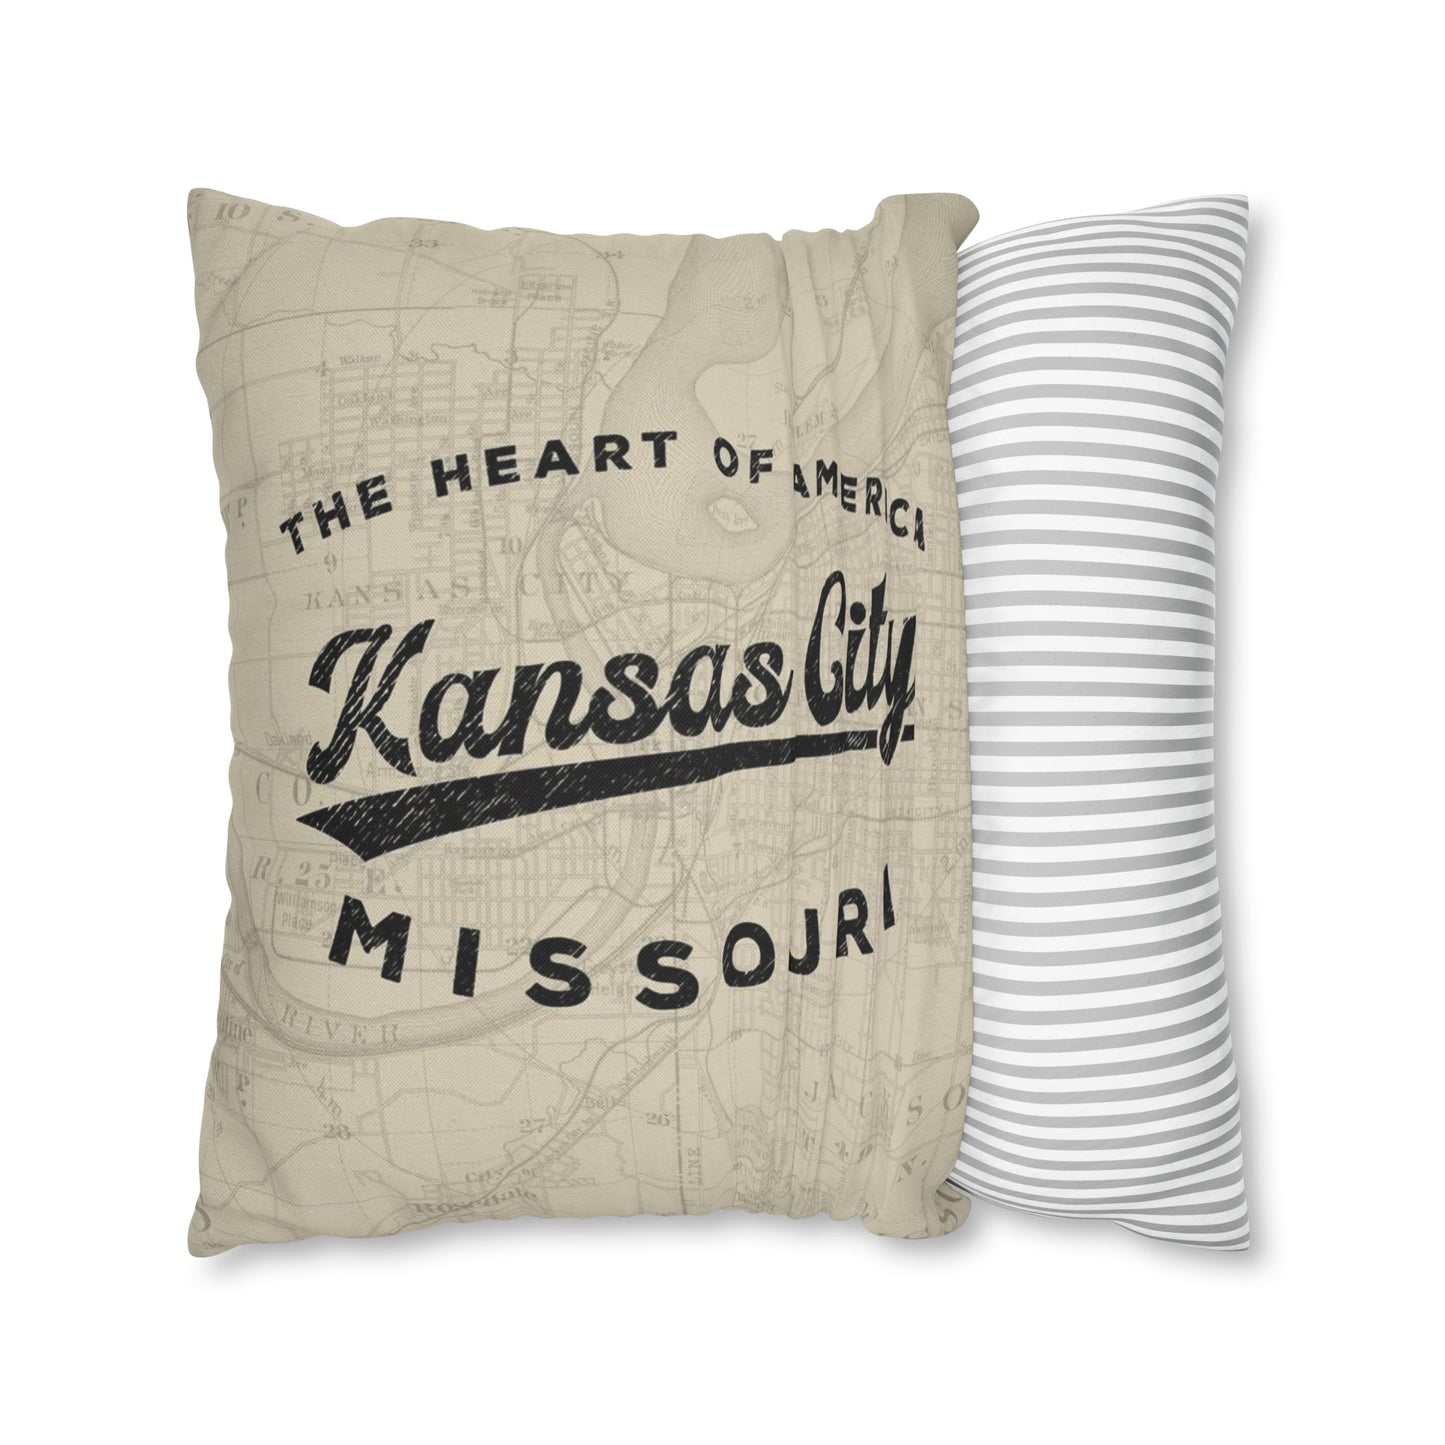 Kansas City Missouri Throw Pillow